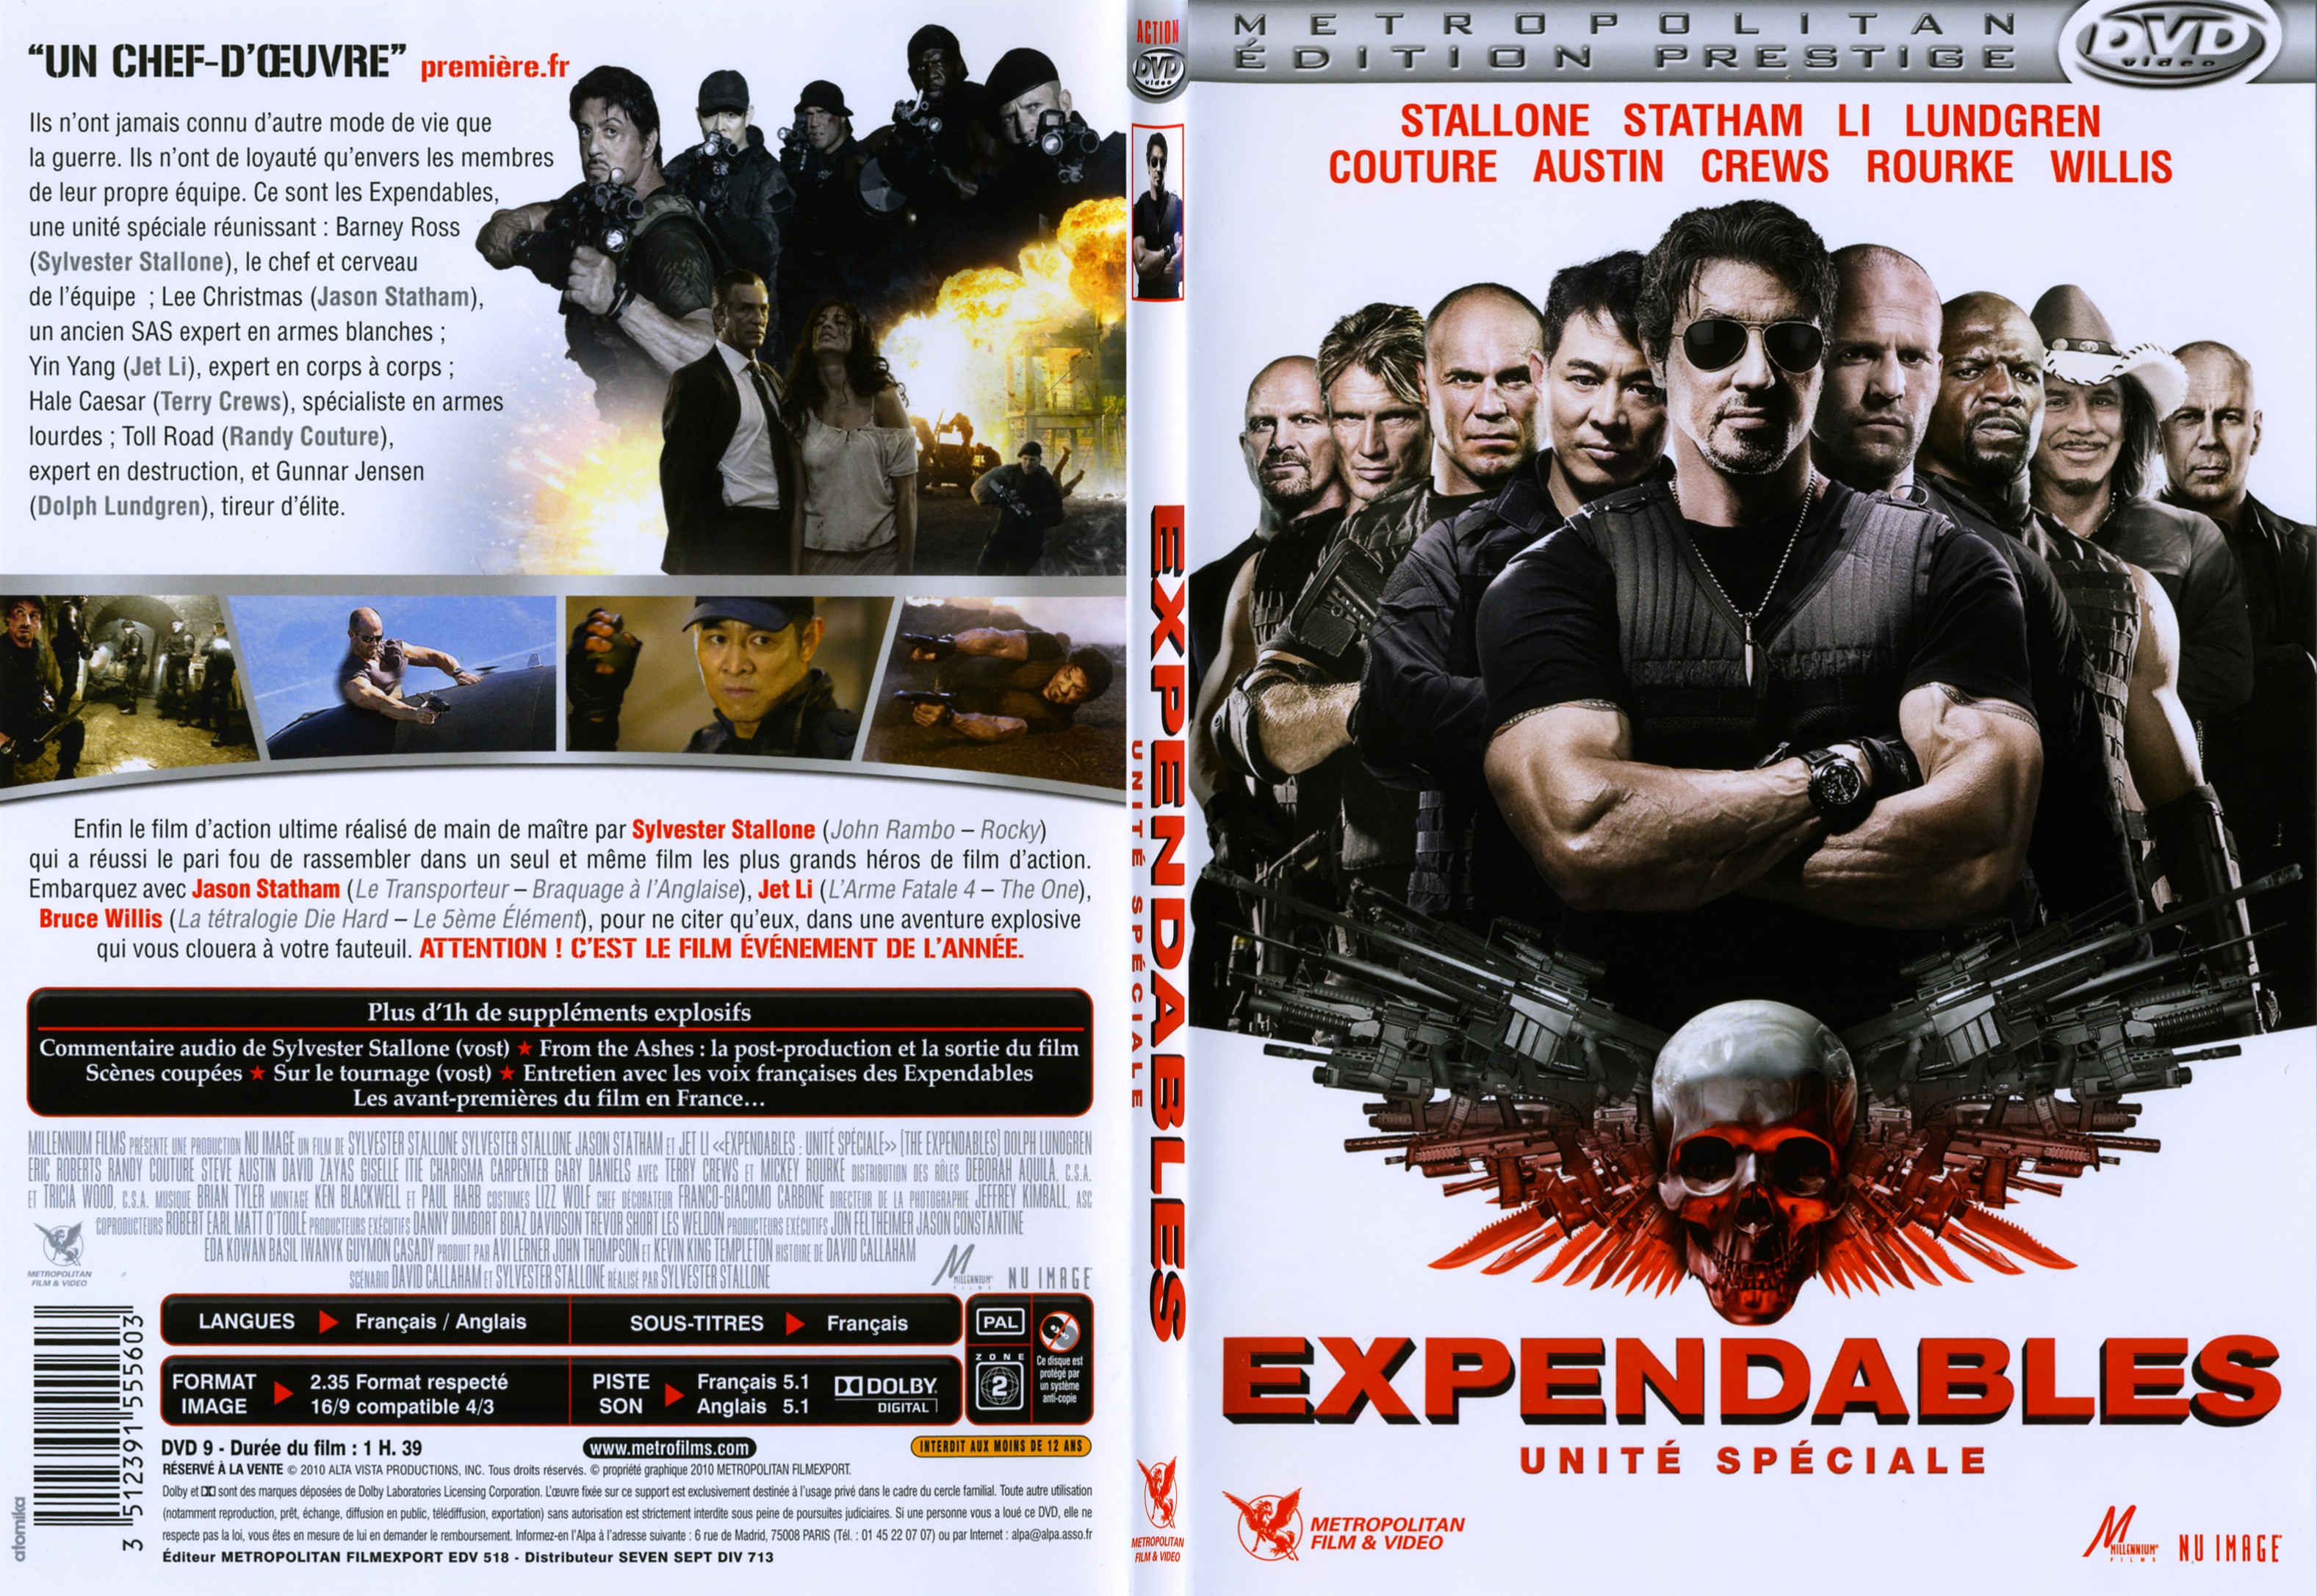 Jaquette DVD Expendables unit spciale - SLIM